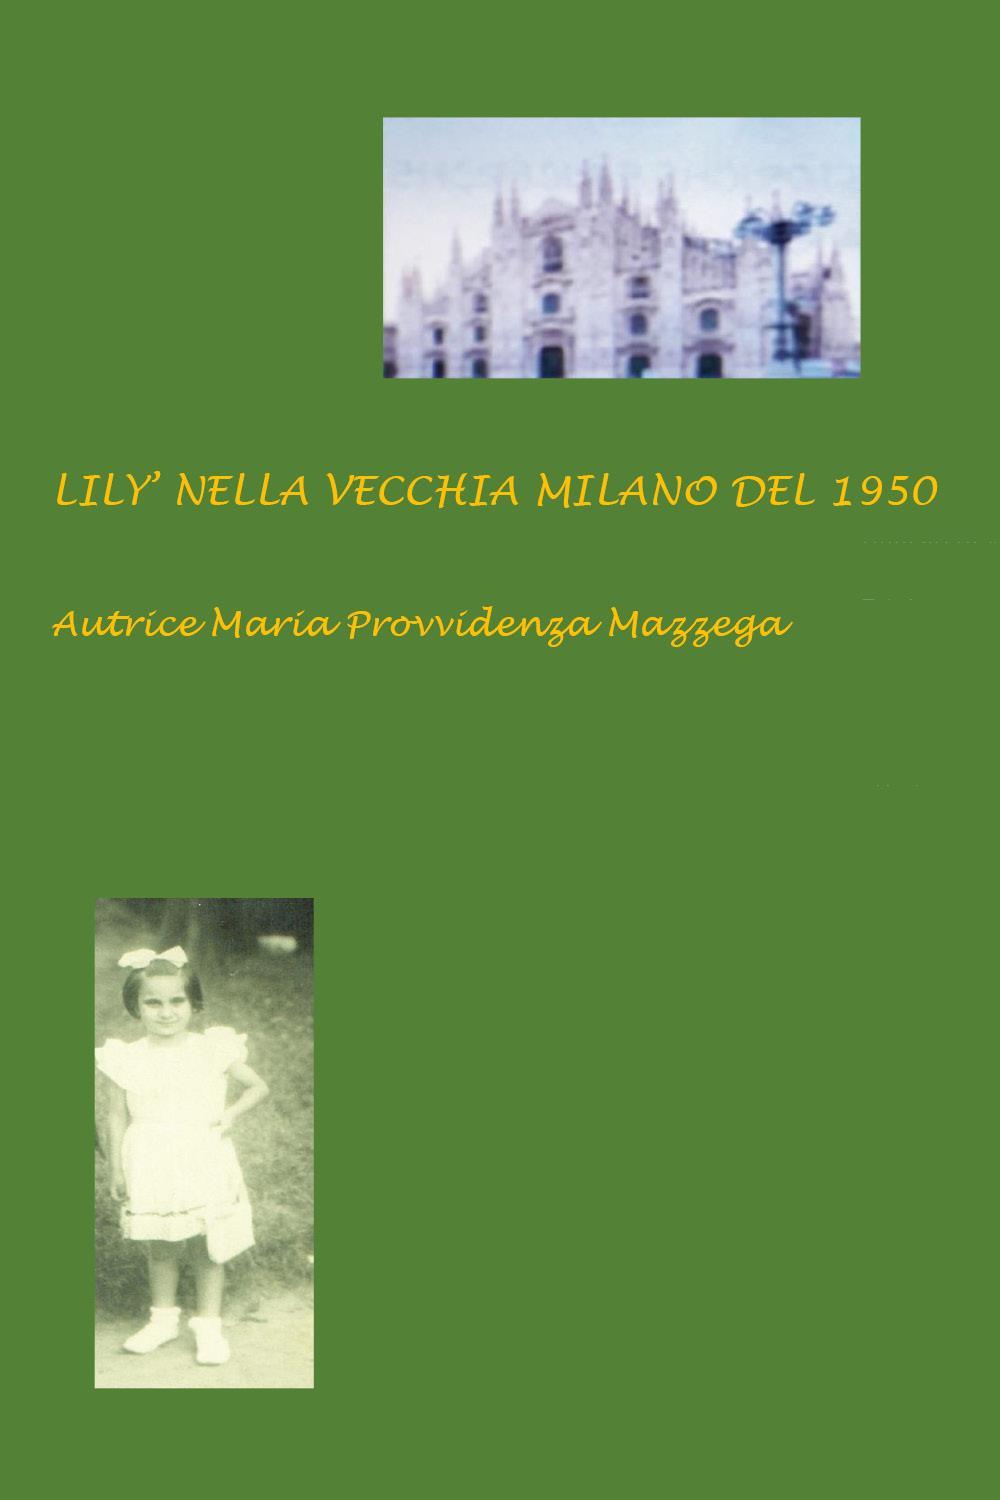 Lily' nella vecchia Milano del 1950